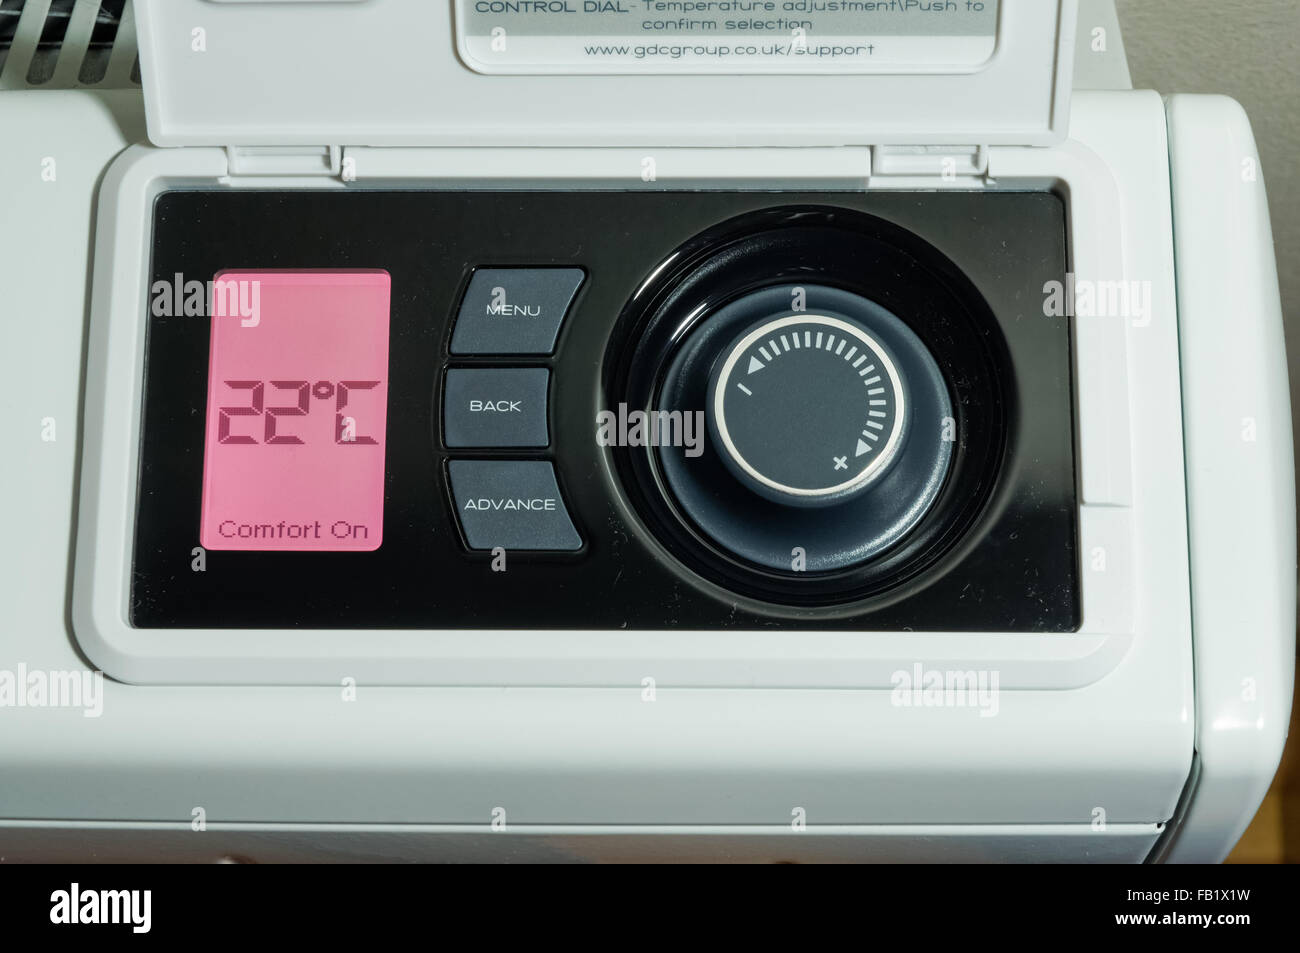 Chauffage central domestique, radiateur de stockage électrique, affichage LCD et panneau de commande de température réglé sur une température de 22 degrés celsius Banque D'Images